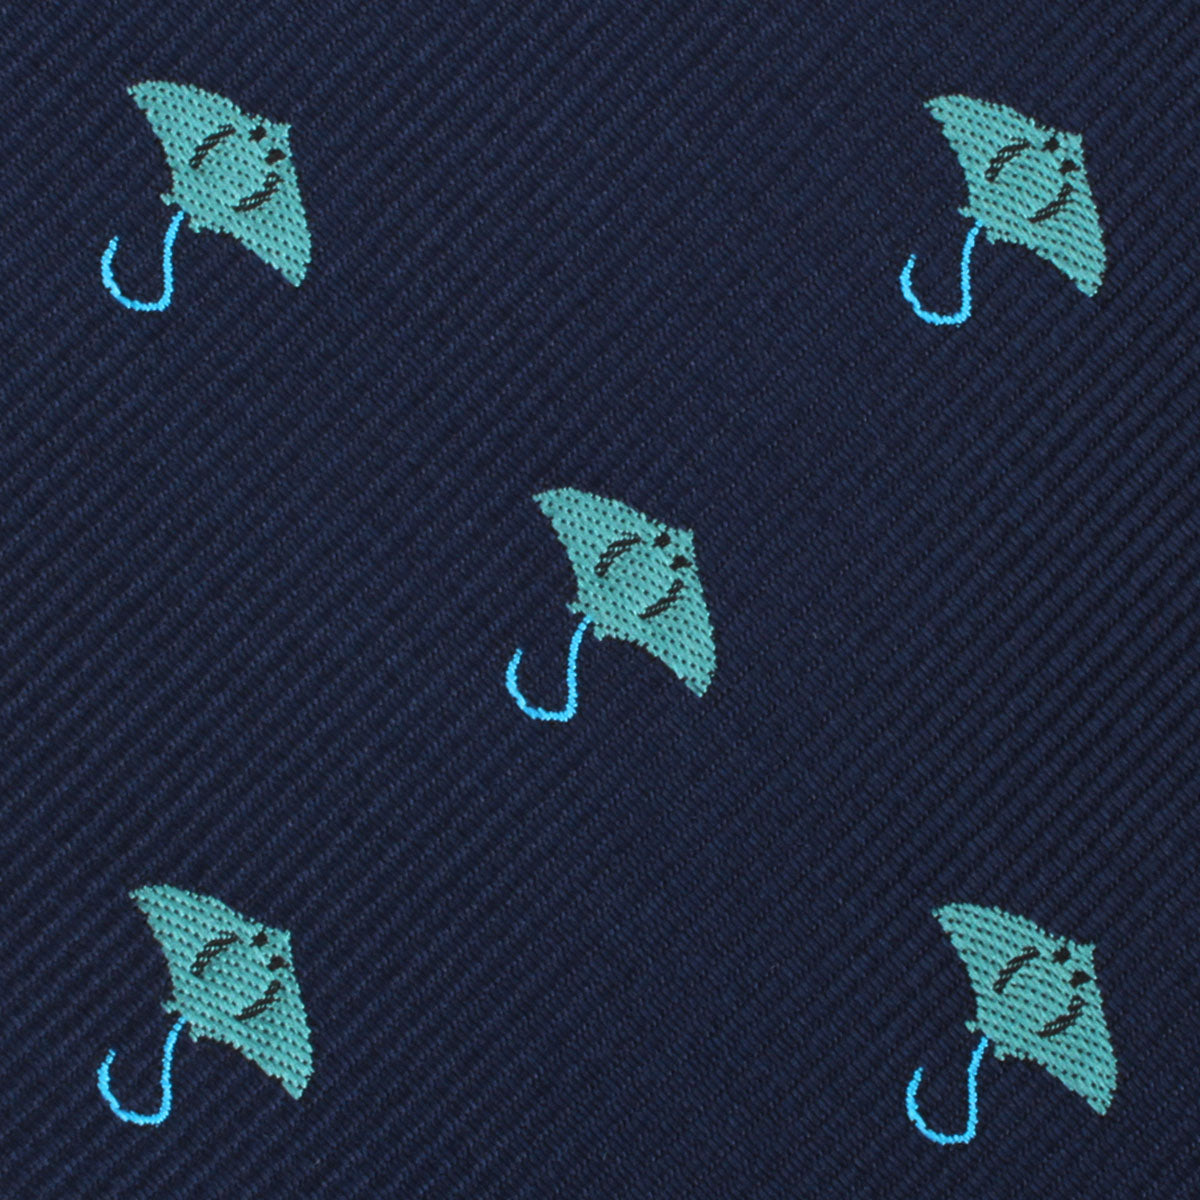 Manta Stingray Skinny Tie Fabric